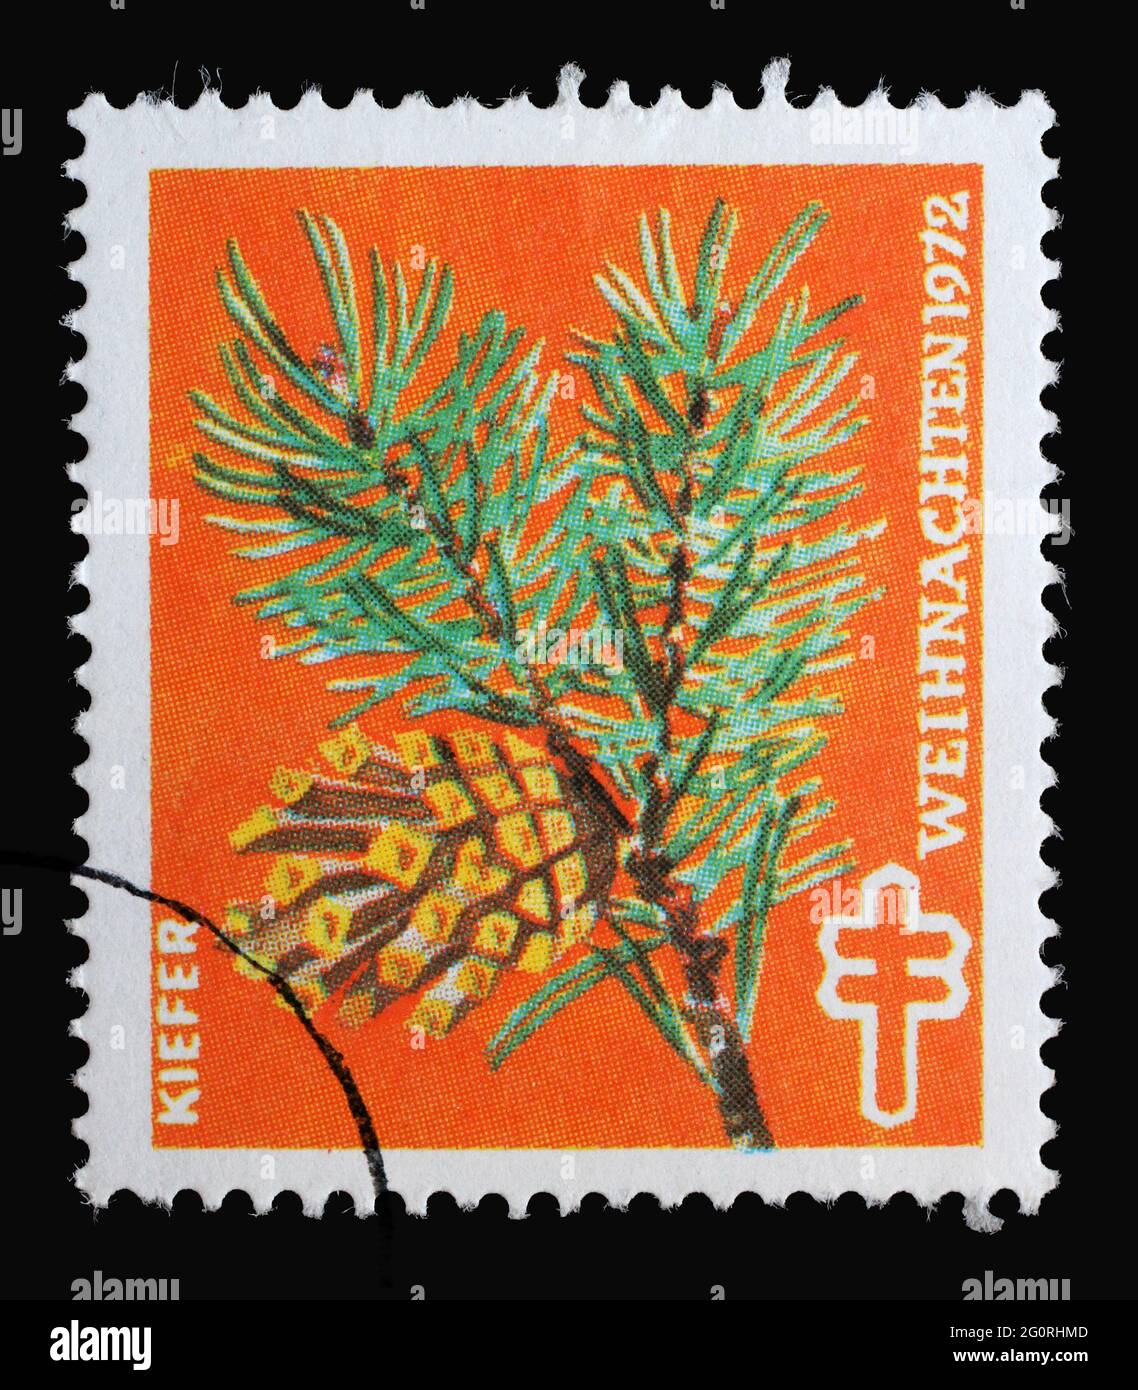 Un timbre imprimé en Allemagne montrant le pin, timbre de Noël pour aider le malade de la tuberculose et nous protéger, vers 1972 Banque D'Images